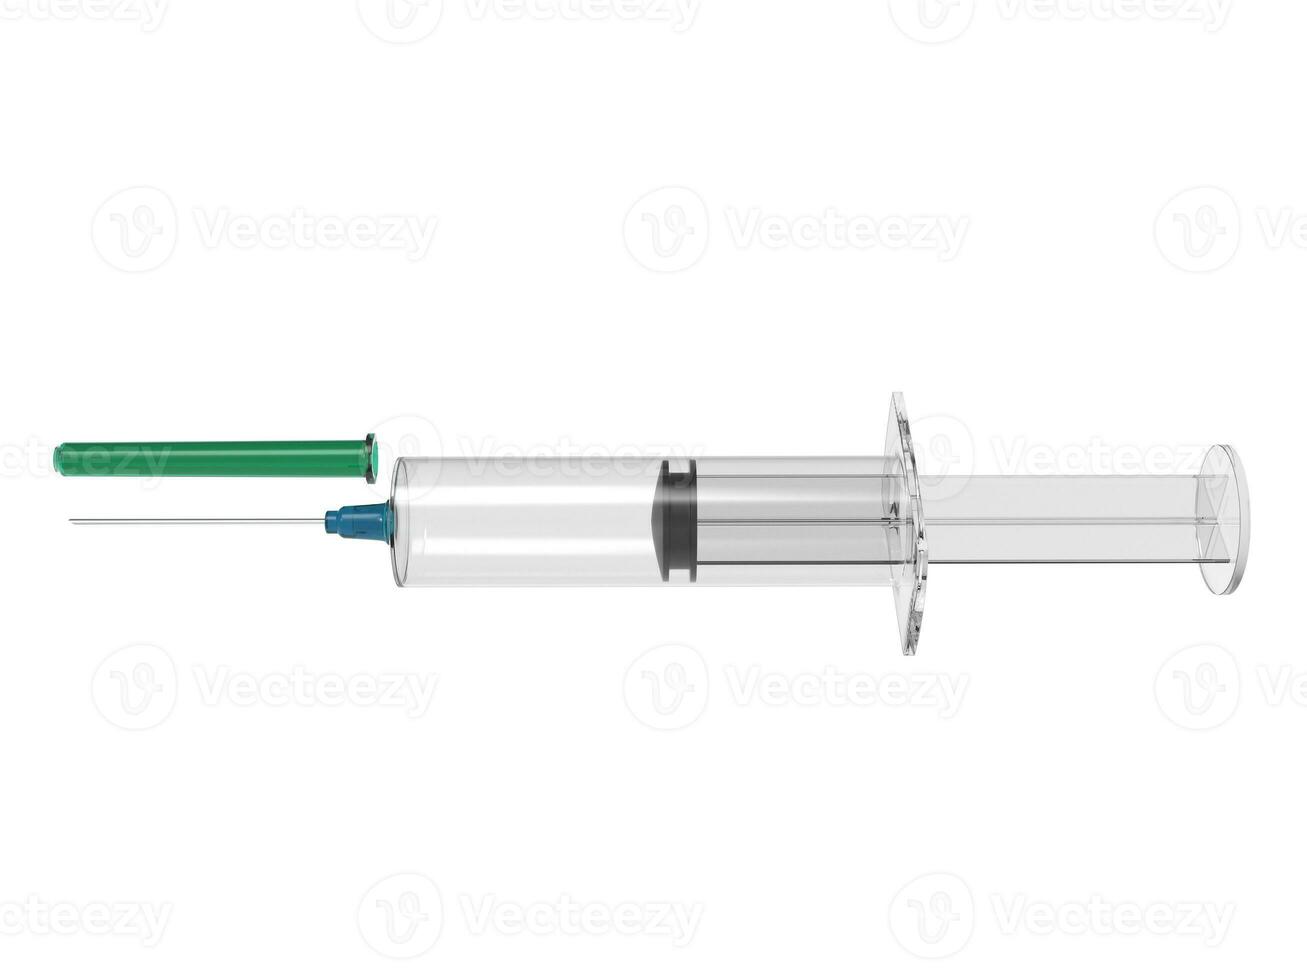 vacuna jeringuilla con azul aguja y verde aguja gorra - lado ver 31201145  Foto de stock en Vecteezy